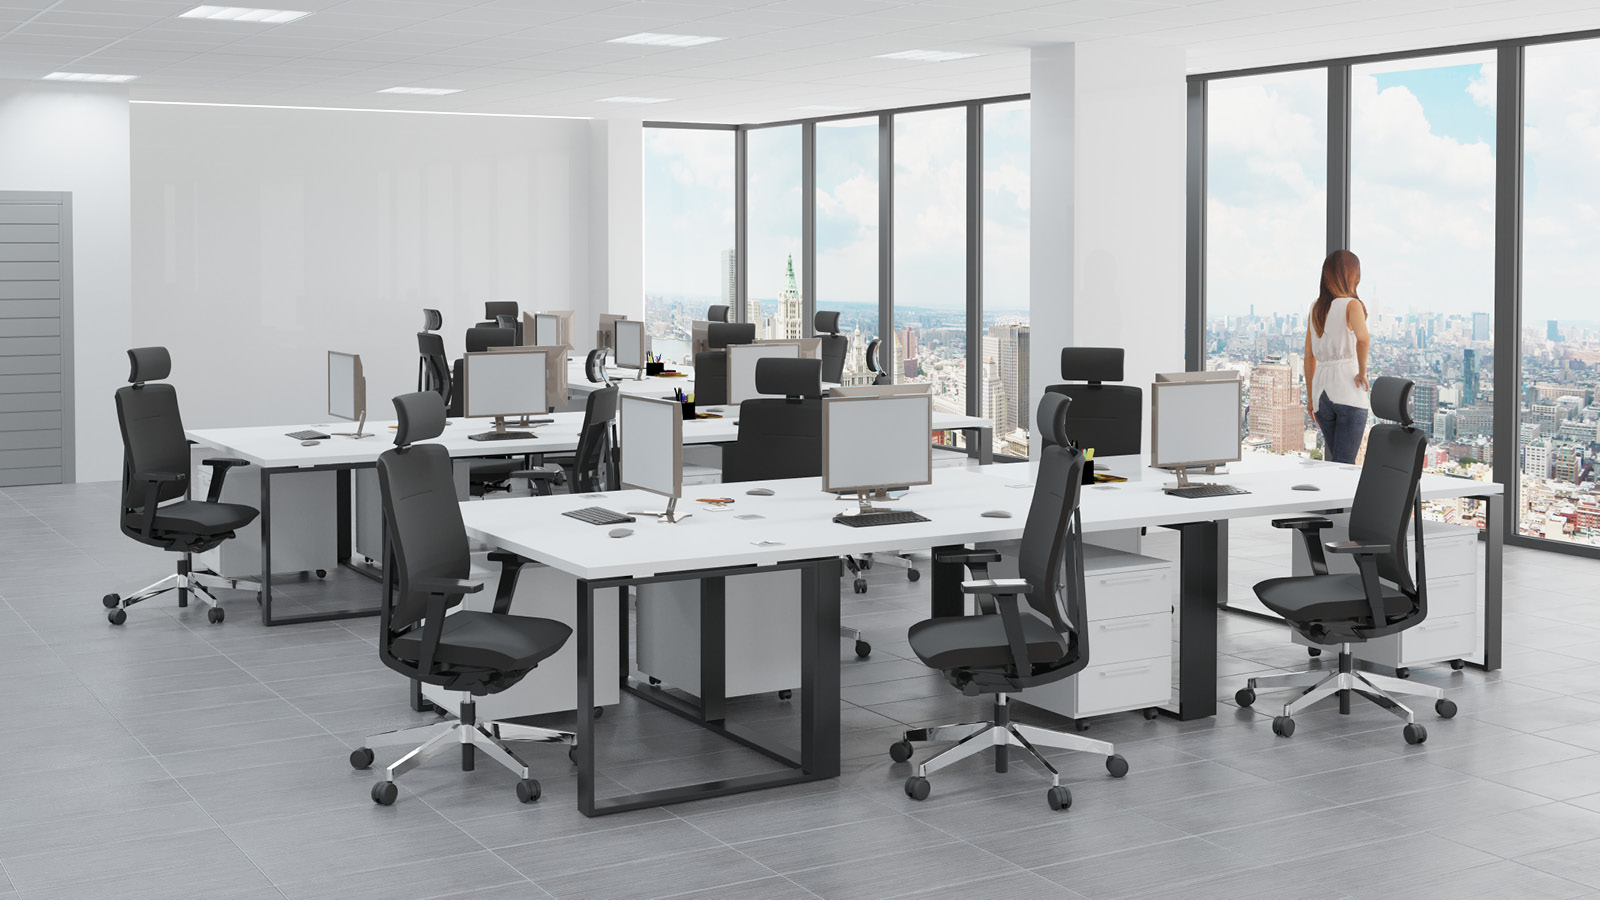 Nowoczesne biuro zostało wyposażone w zestaw do pracy zespołowej - duże biało-czarne biurka z komodami i obrotowymi fotelami.